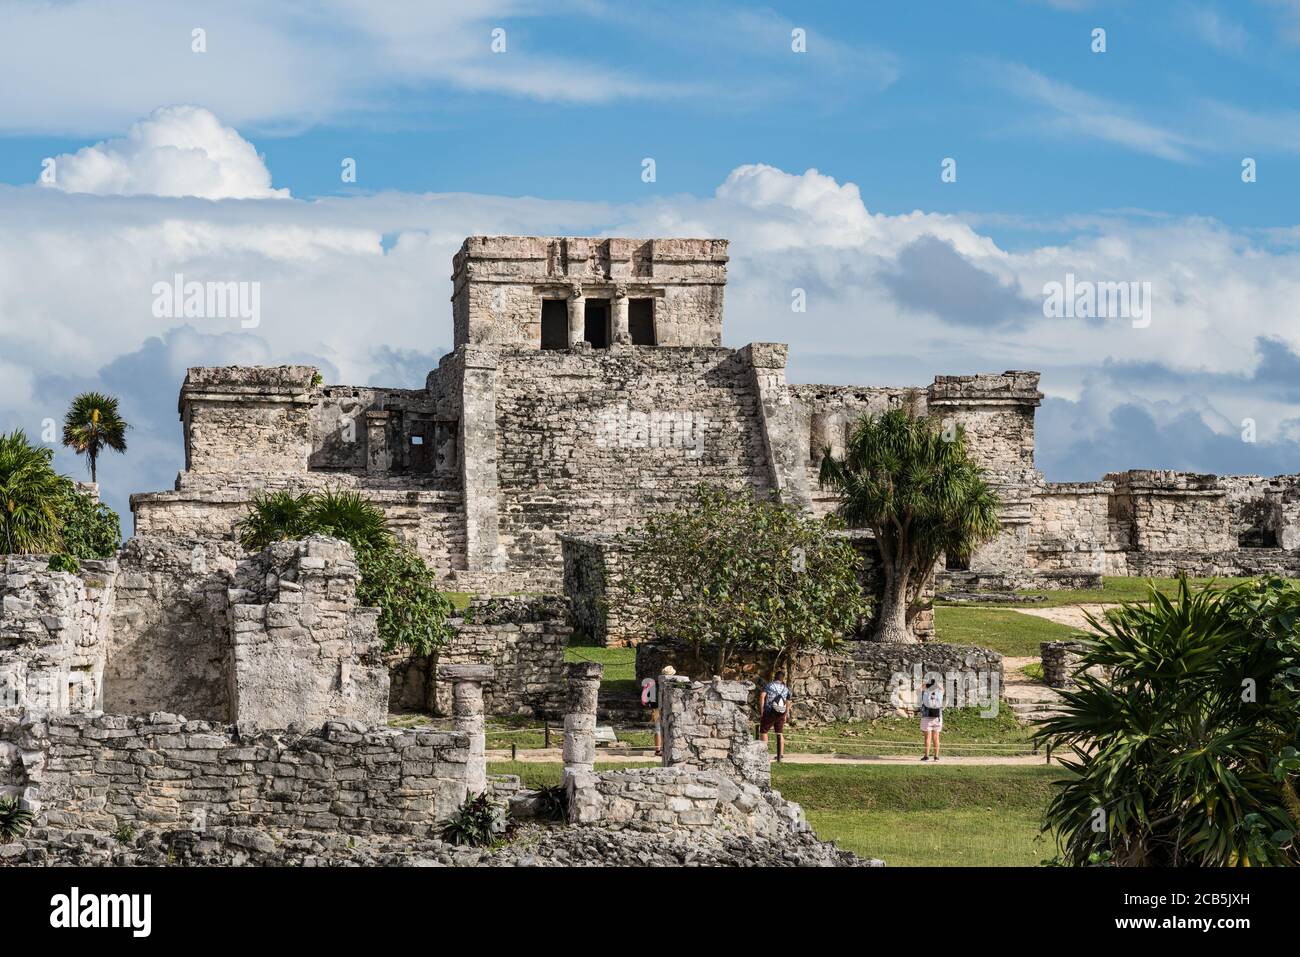 El Castillo ou le château est le plus grand temple des ruines de la ville maya de Tulum sur la côte de la mer des Caraïbes. Parc national de Tulum, qui Banque D'Images